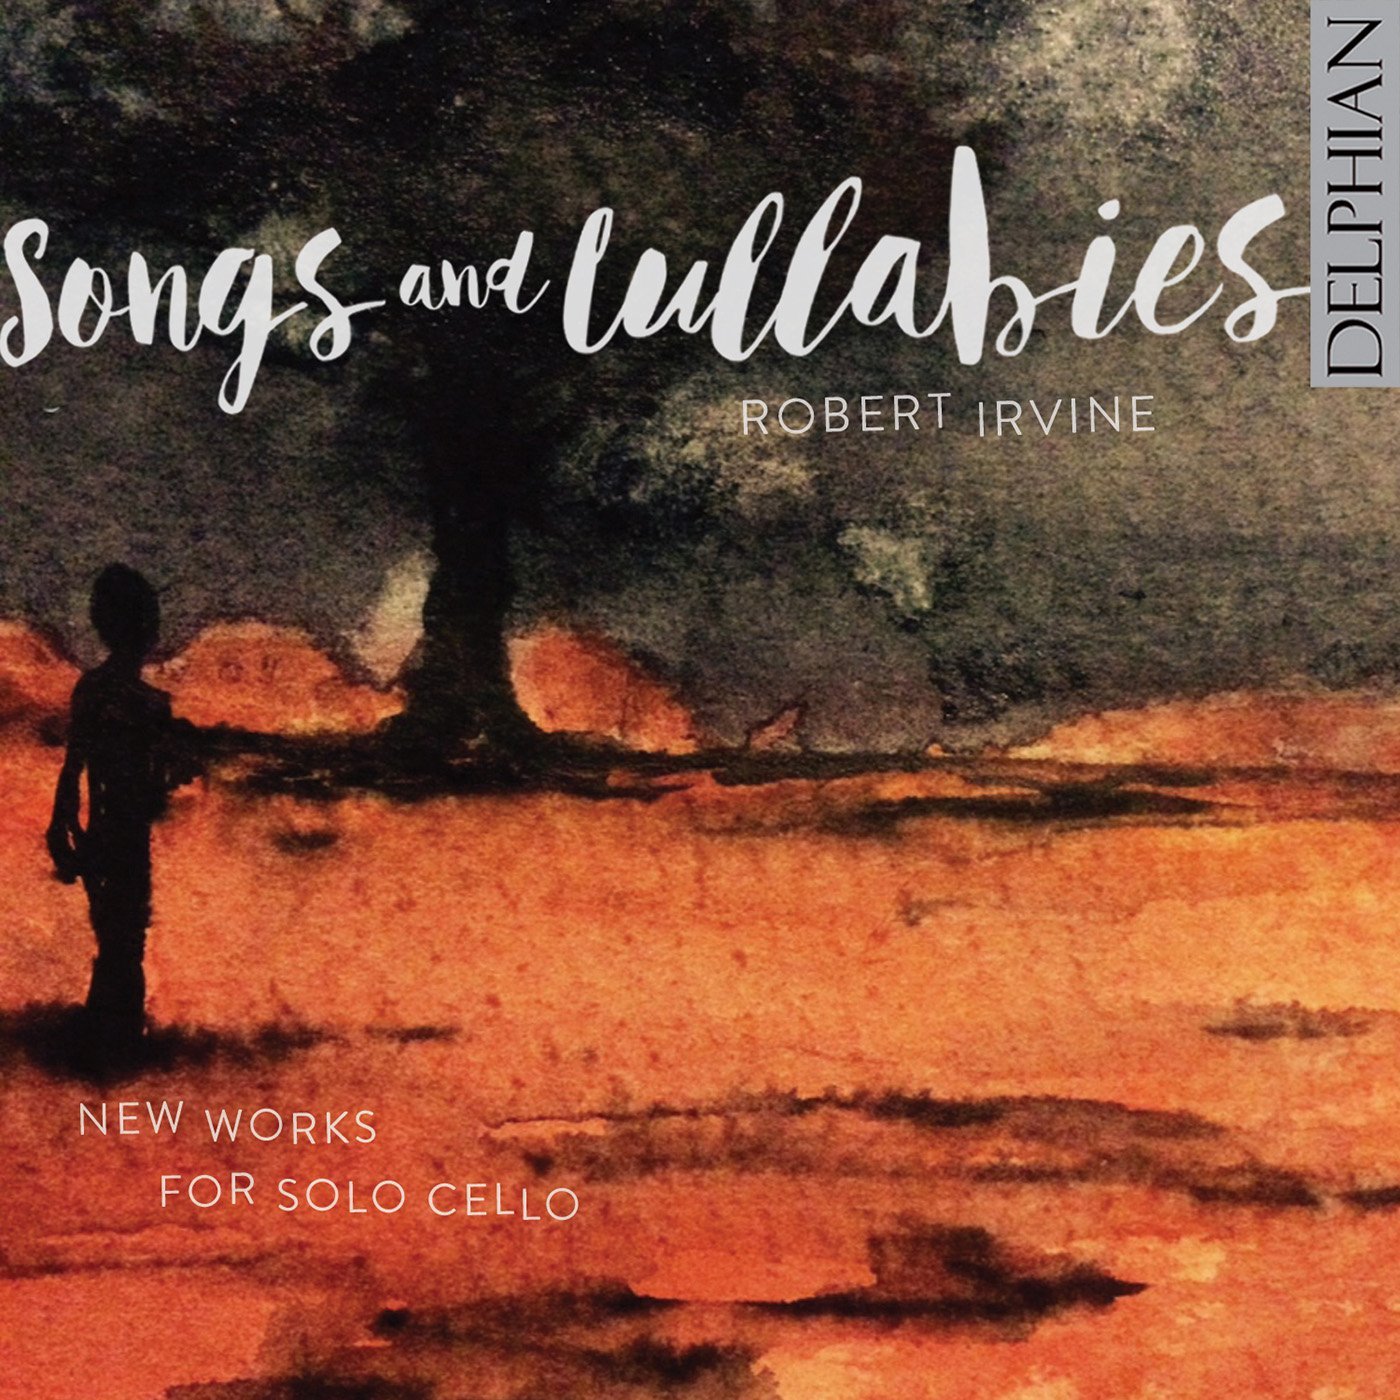 Audio Cd Robert Irvine - Songs And Lullabies: New Works For Solo Cello NUOVO SIGILLATO, EDIZIONE DEL 23/09/2016 SUBITO DISPONIBILE